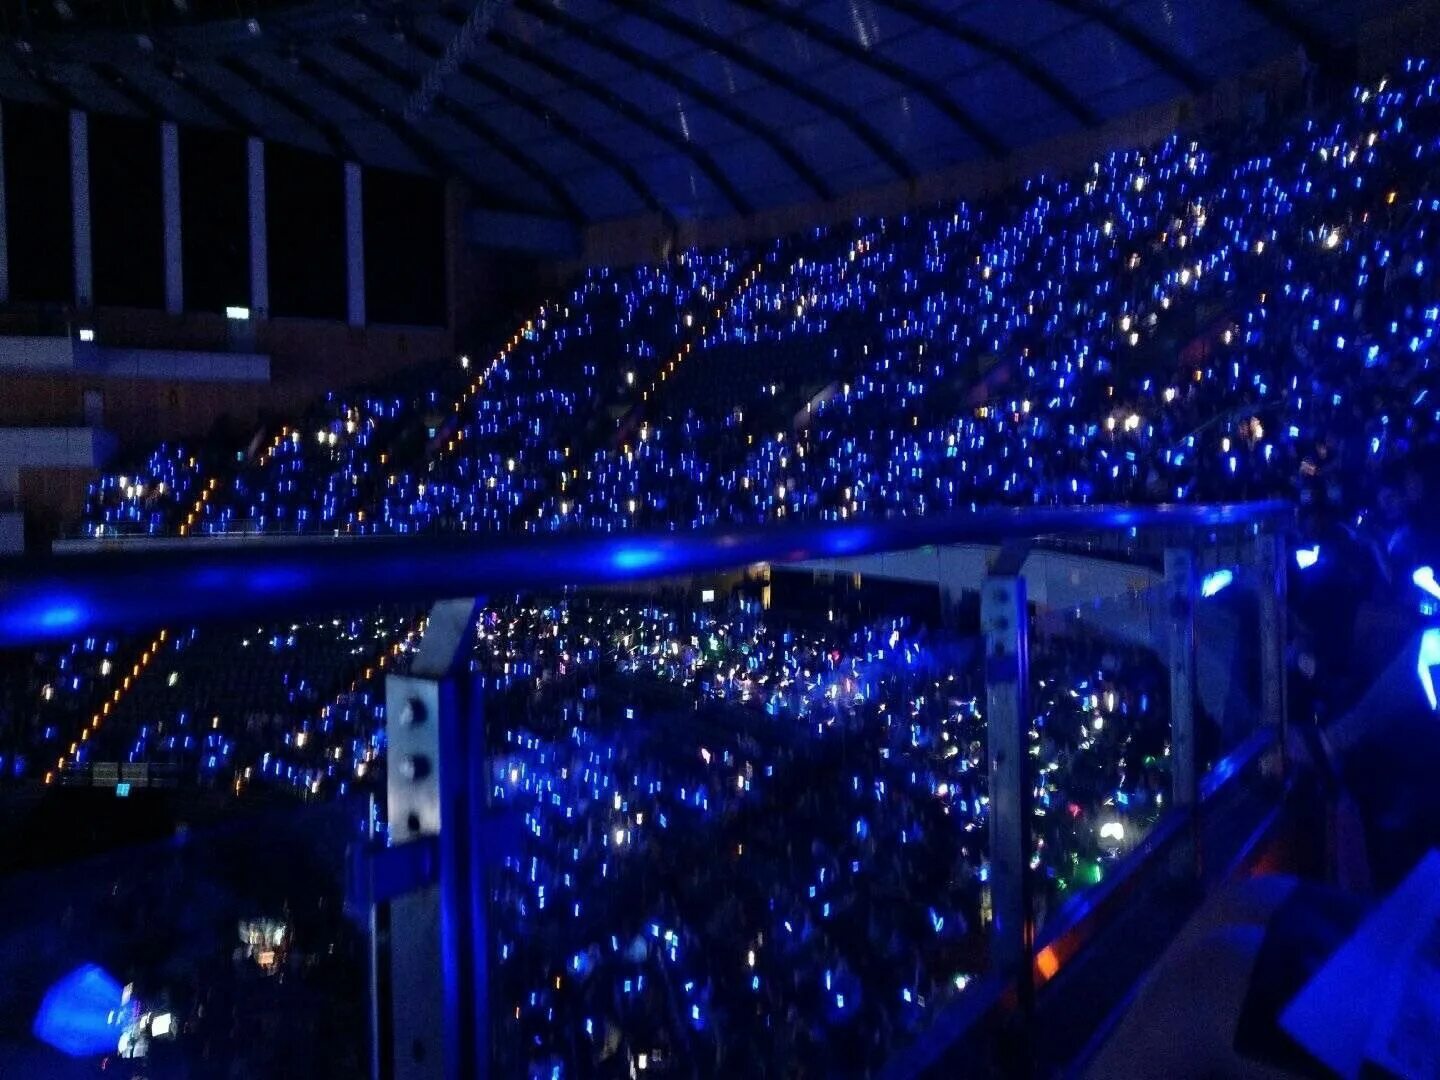 Big ocean kpop. Океан кпоп. Сапфировый океан» на концерте группы super Junior. Тайвань концерт. Kpop Okean Concert.